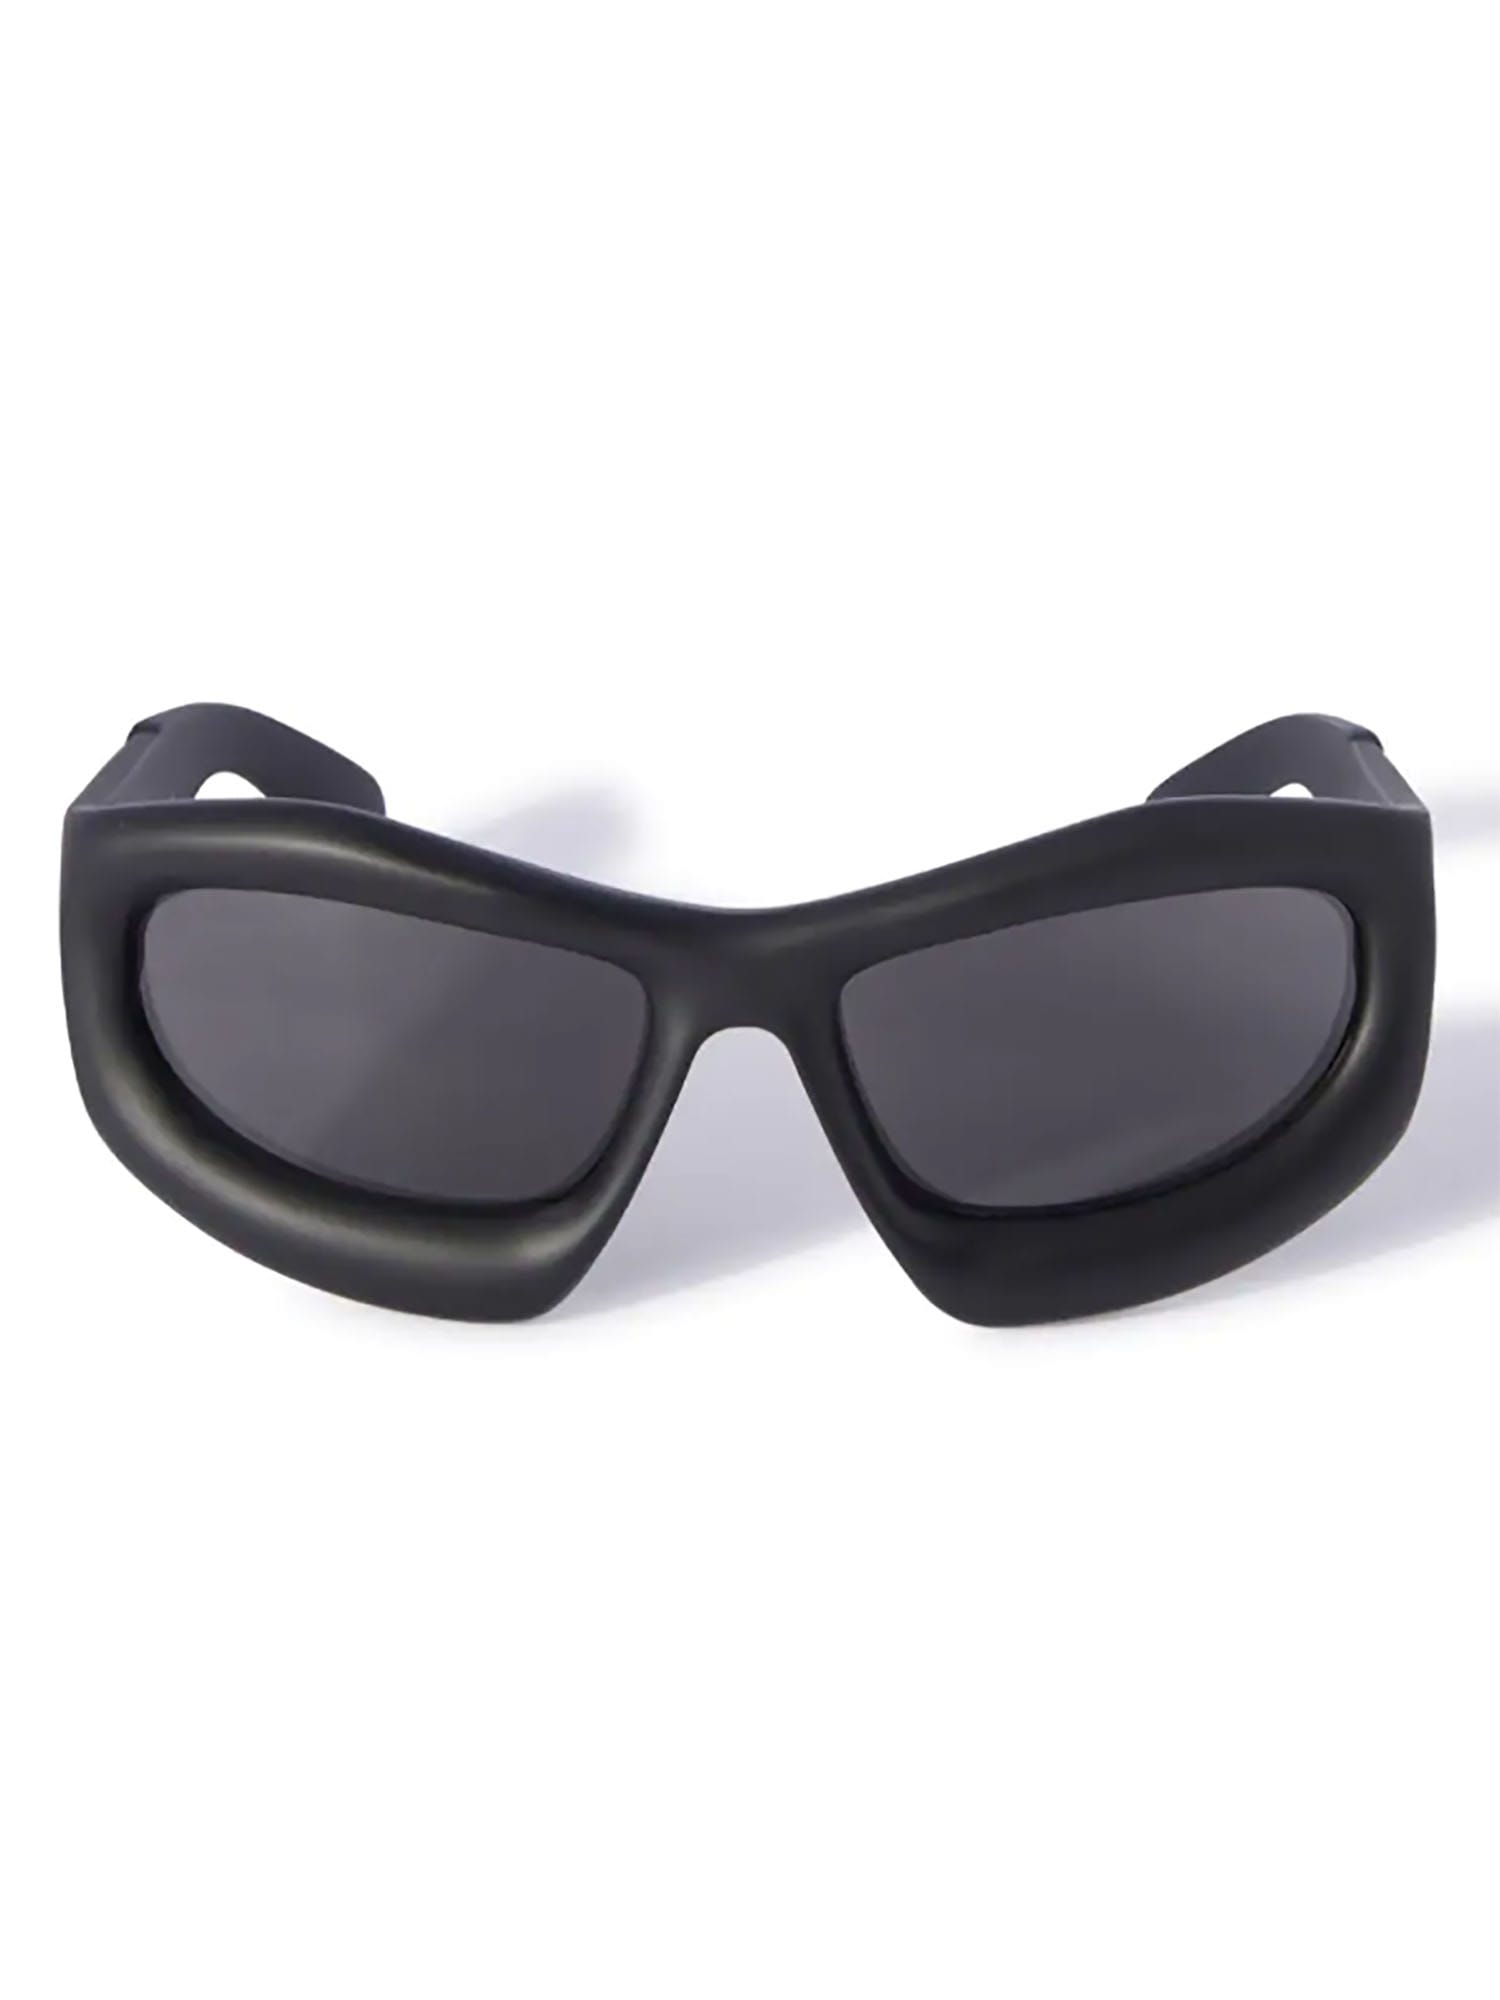 Off-White KATOKA SUNGLASSES BLACK DARK G Sunglasses